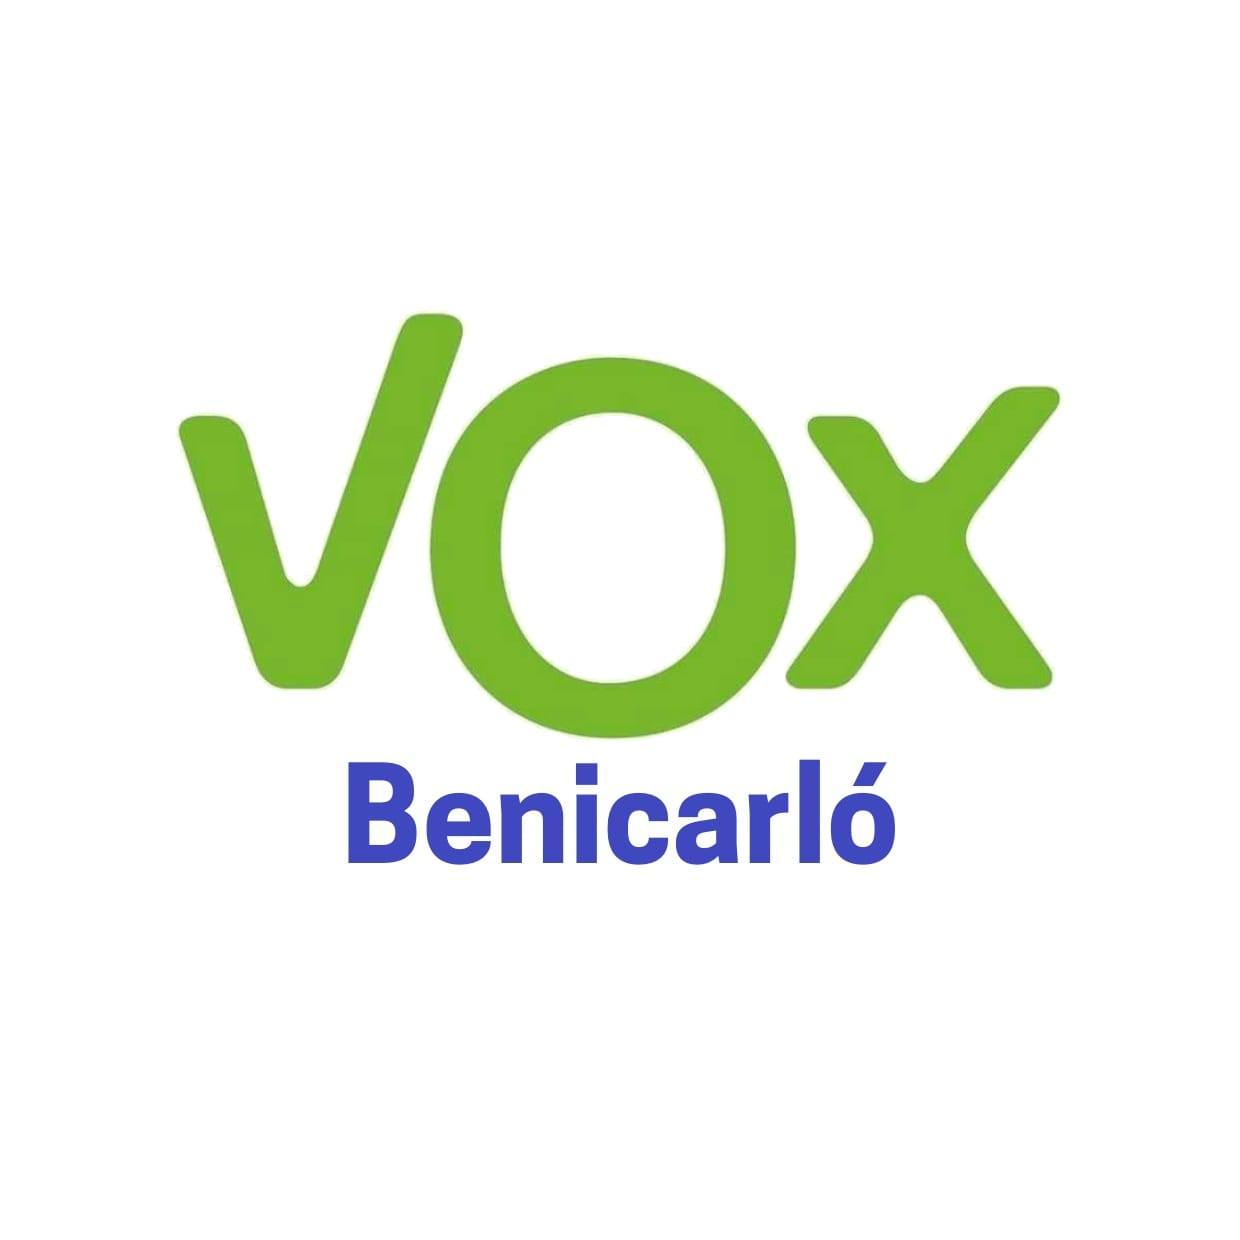 VOX reclama esfuerzos para garantizar la seguridad ciudadana en Benicarló